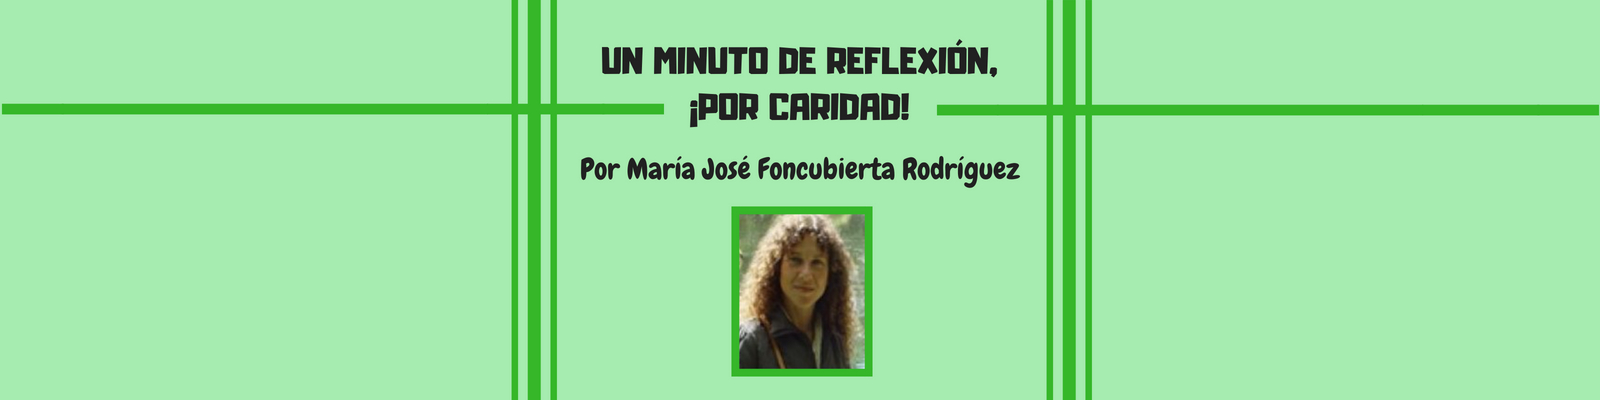 Un minuto de reflexión, ¡por caridad! Por María José Foncubierta Rodríguez